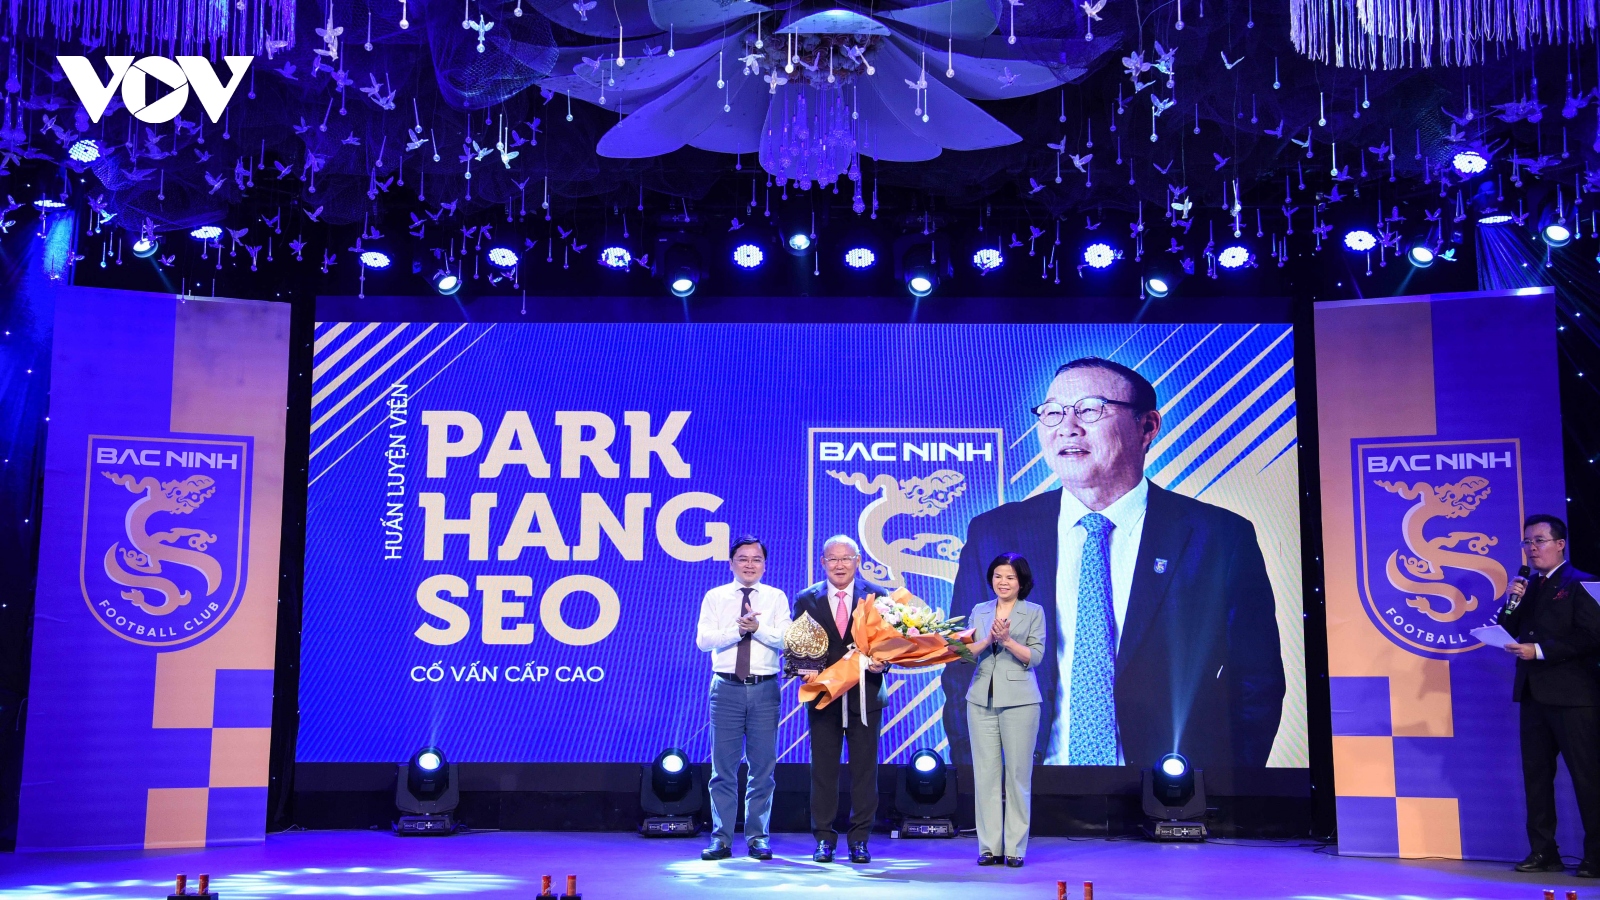 HLV Park Hang Seo chính thức làm cố vấn cấp cao cho Bắc Ninh FC